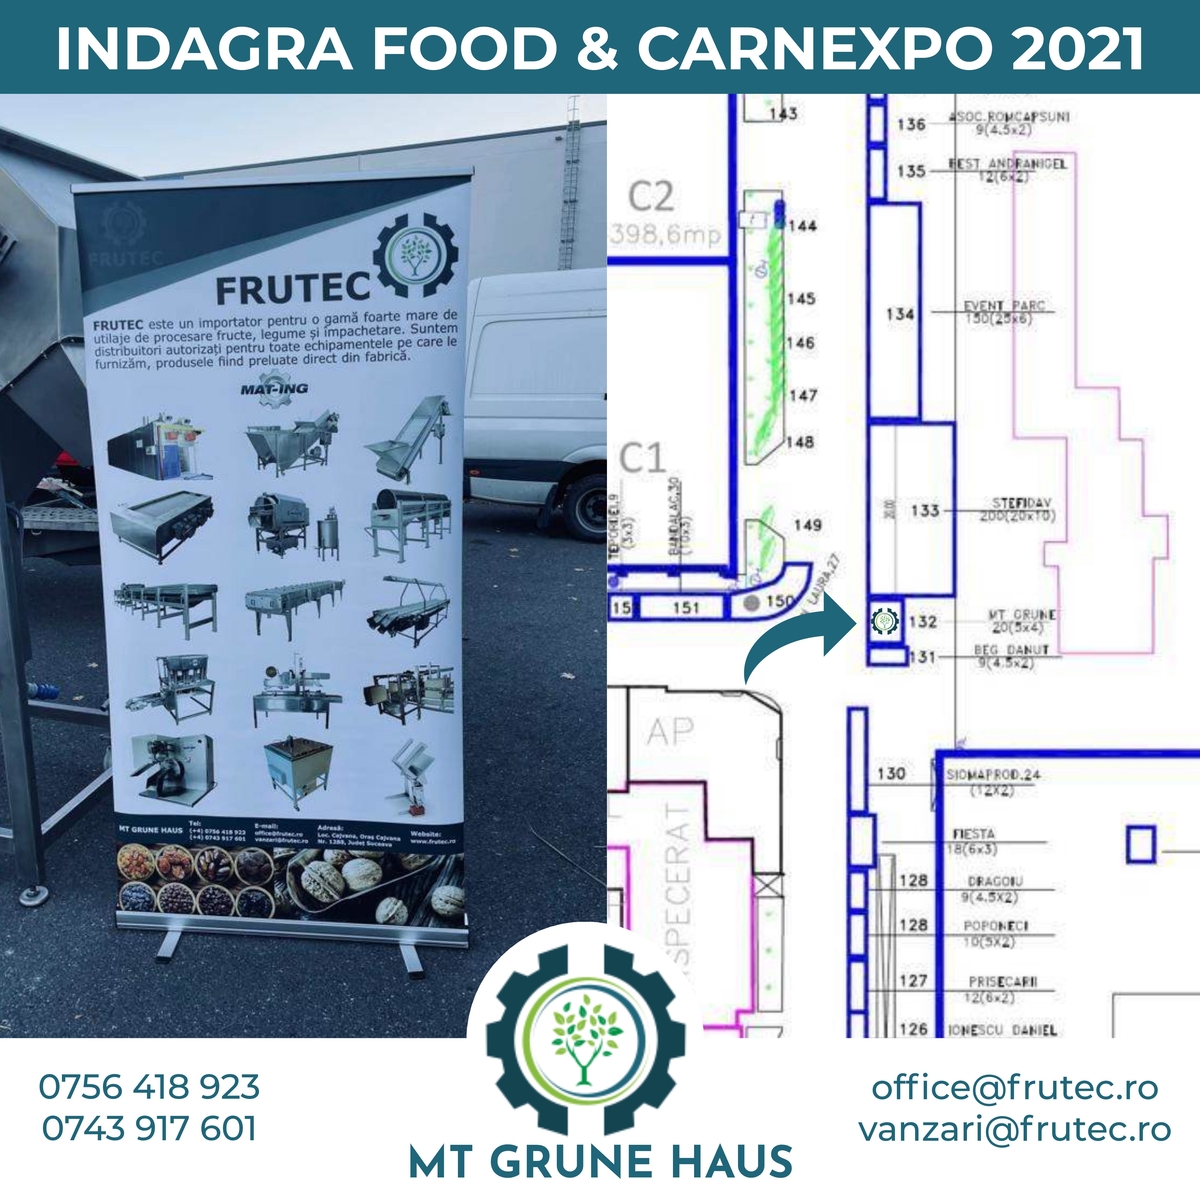 Mt Grune Haus participare eveniment - INDAGRA FOOD & CARNEXPO 2021